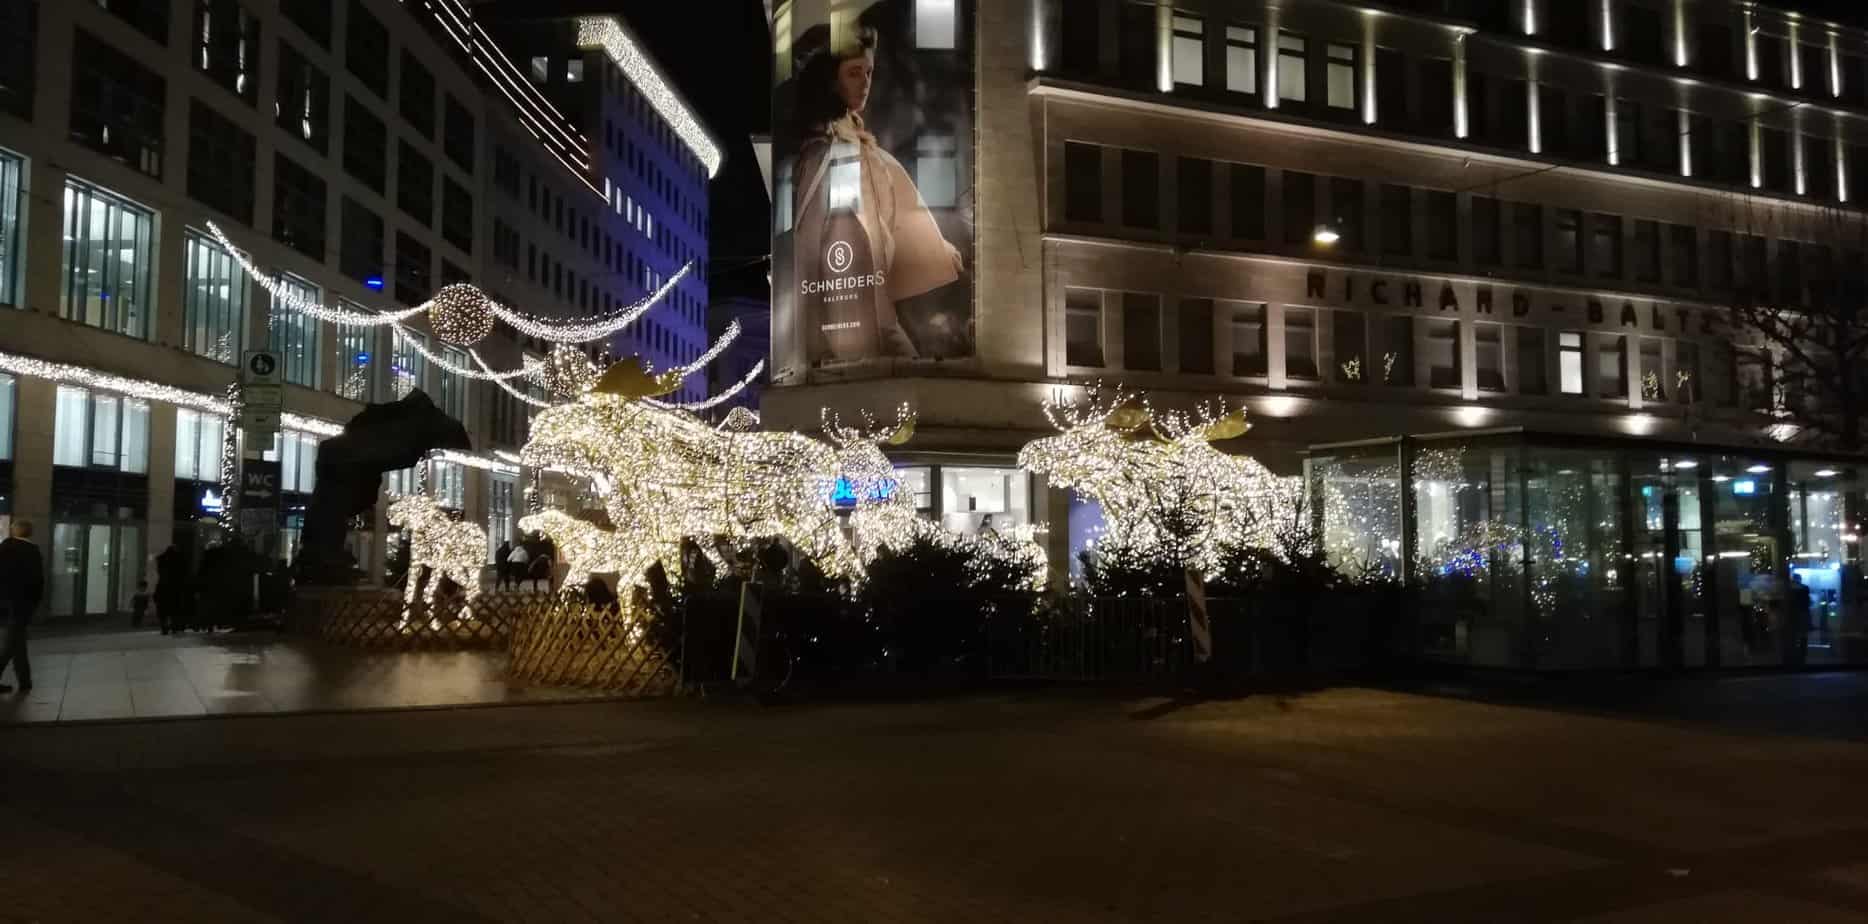 Weihnachtsmarkt in NRW: Meine Empfehlungen